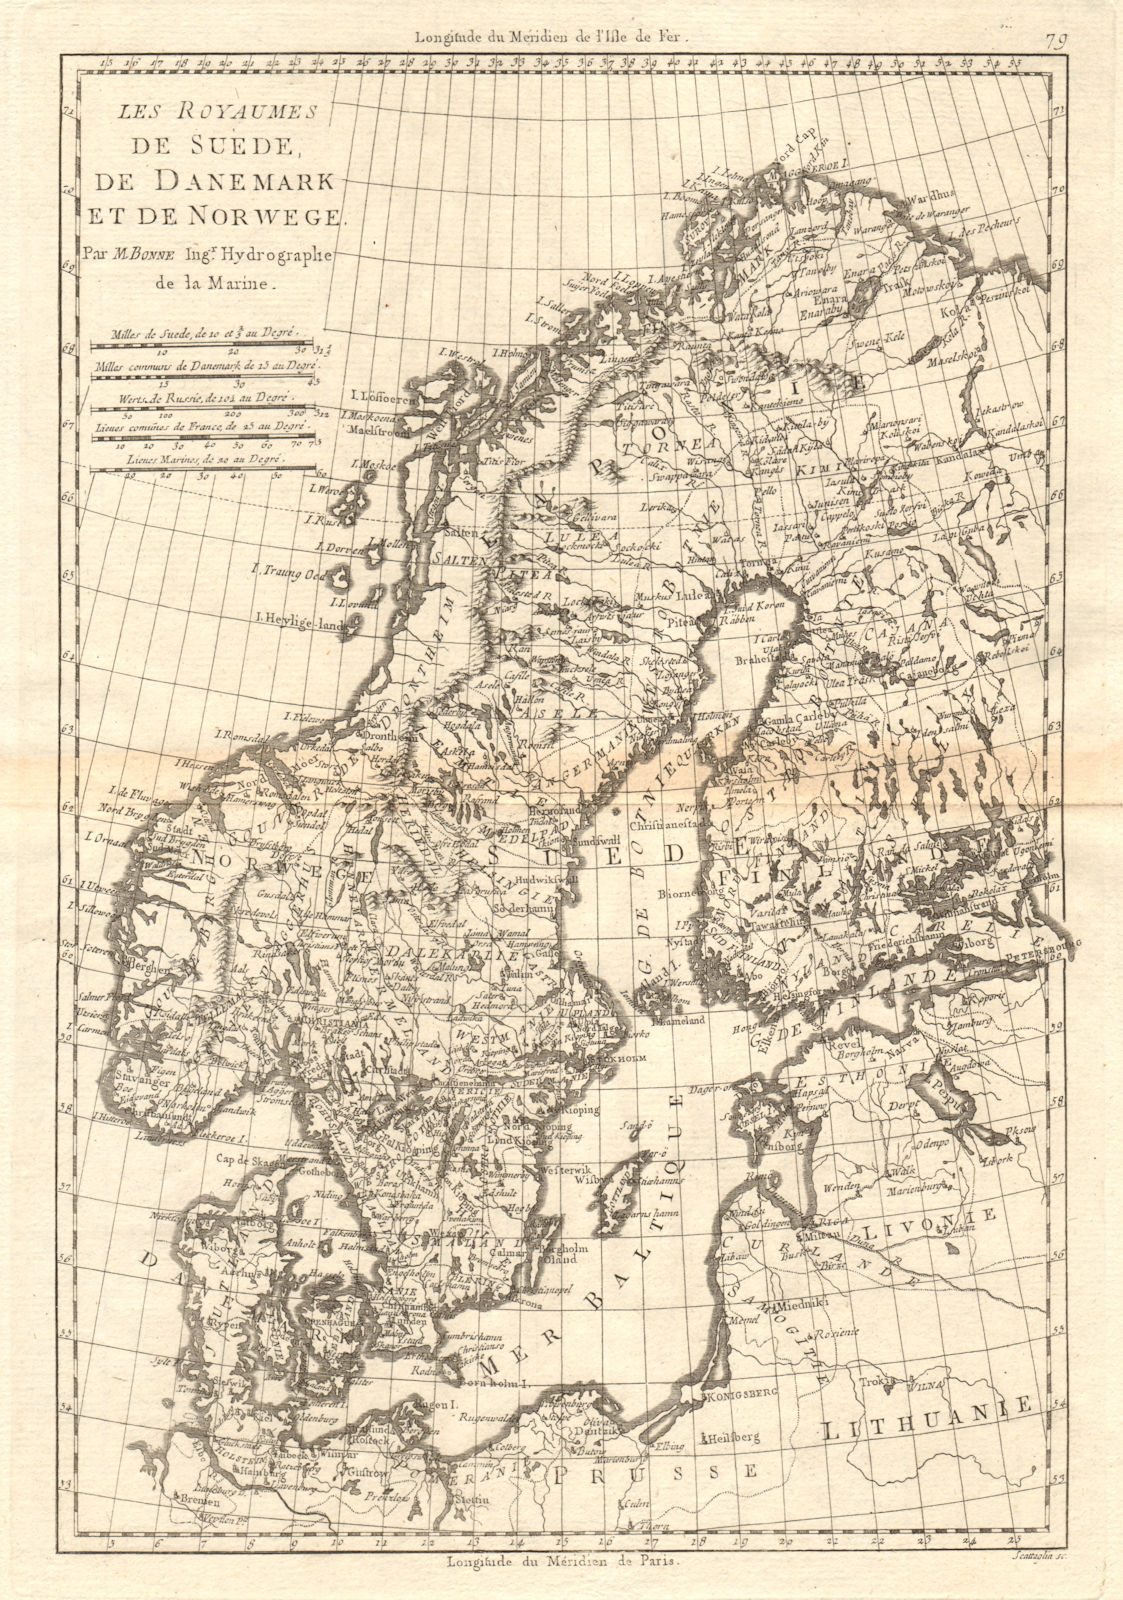 Les Royaumes de Suede, de Danemark et de Norwege. Scandinavia. BONNE 1789 map